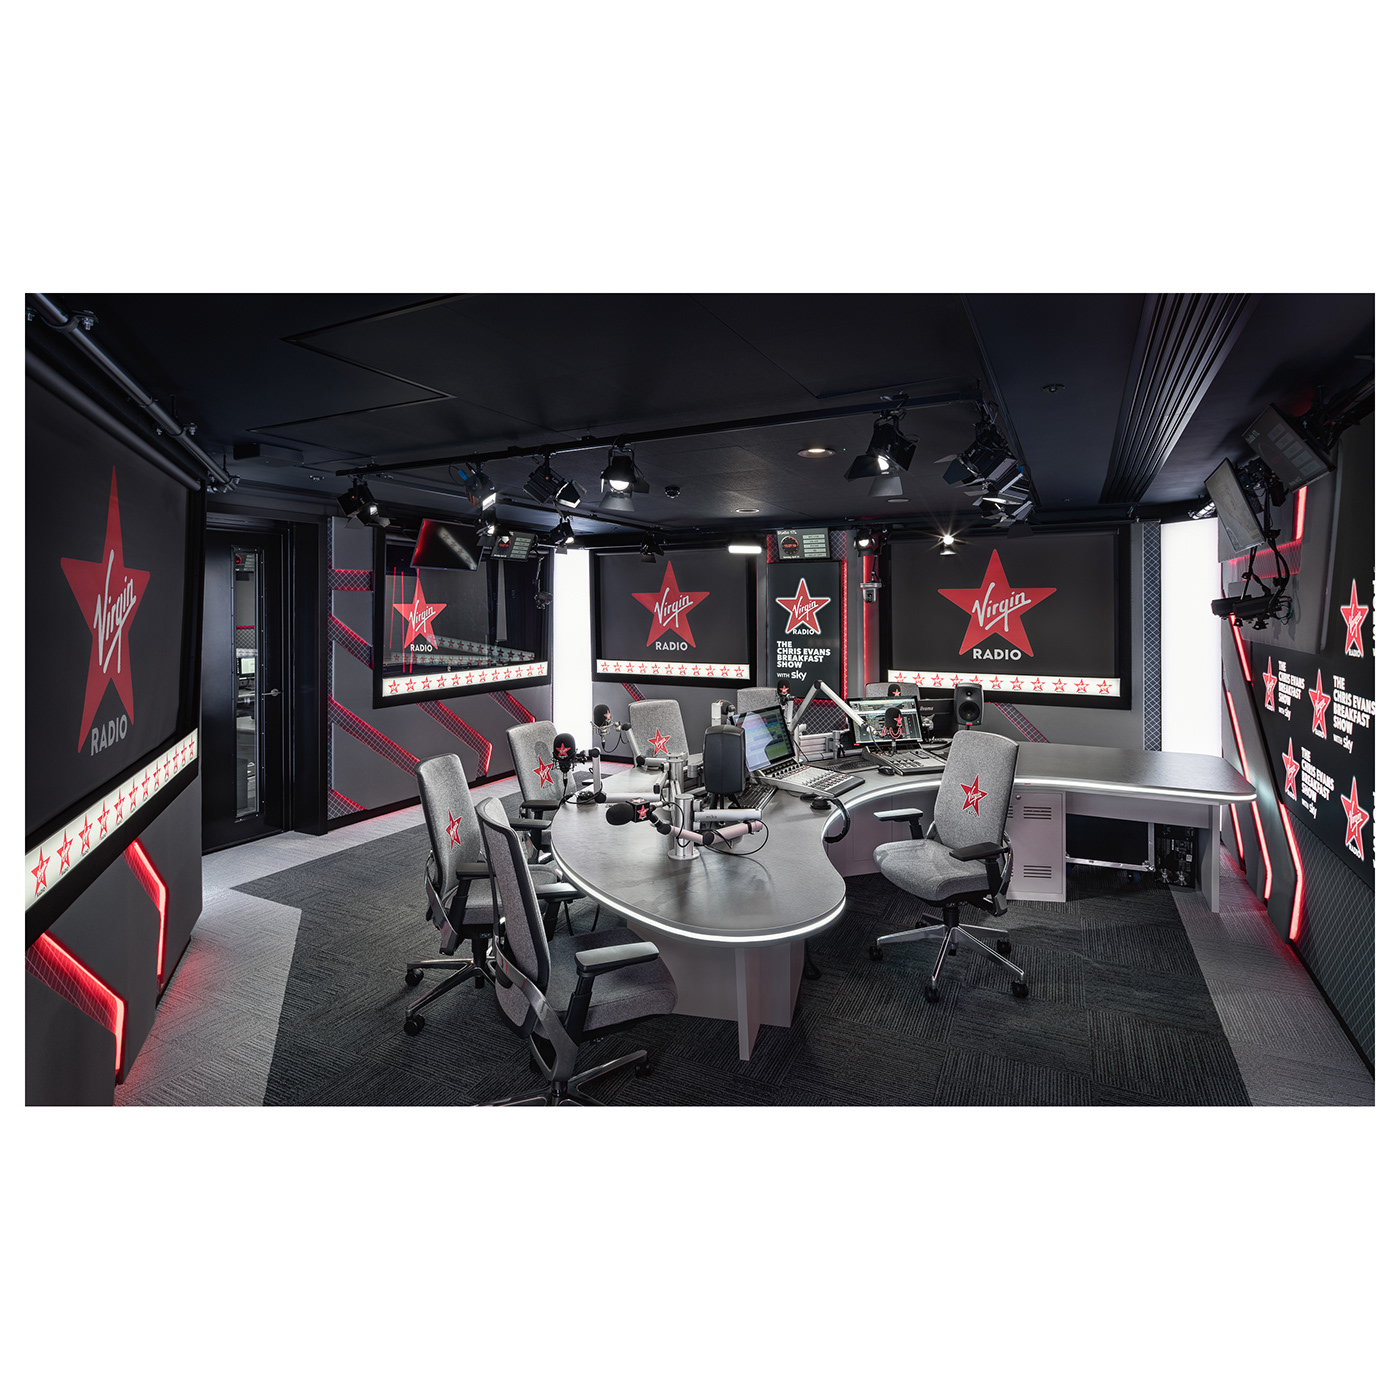 news.uk Office Talksport talksport studio virgin Virgin Radio wireless